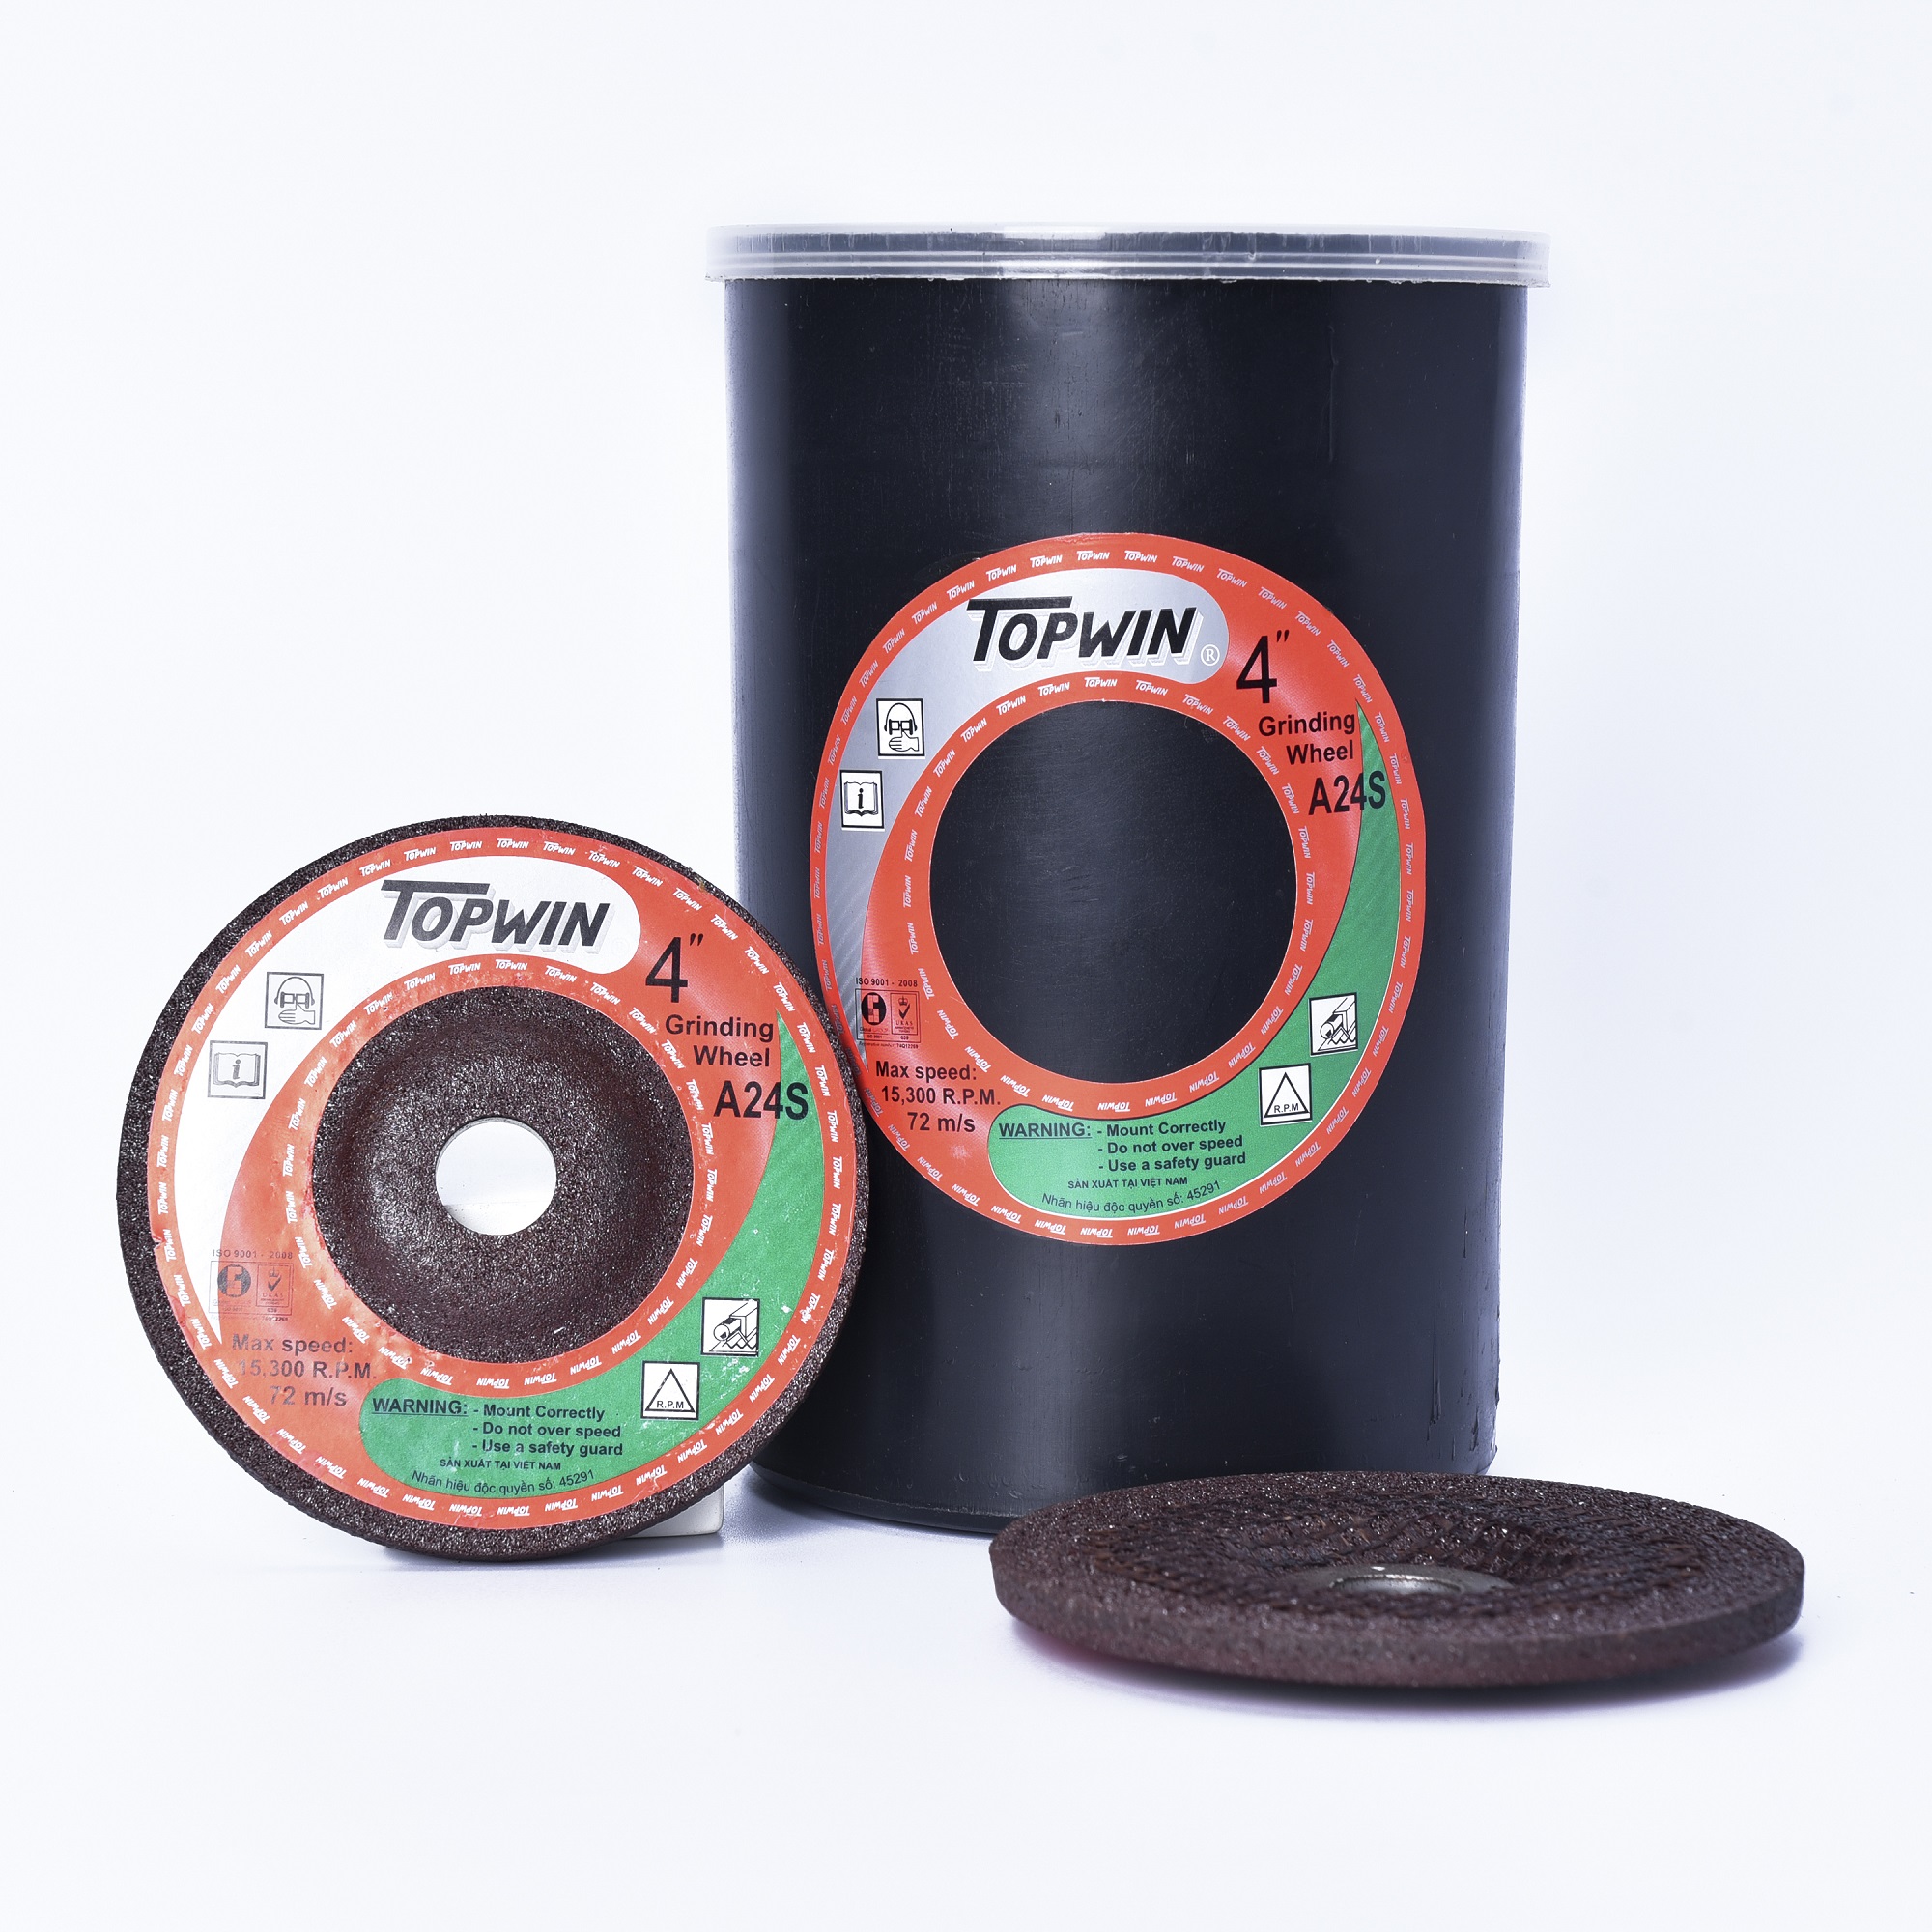 Đá Mài Topwin 100x6x16 mm Lưỡi Mài Chắc Chắn Chống Mài Mòn, Tuổi Thọ Cao Và Độ Chính Xác Hoàn Hảo | TOPWIN Official Store